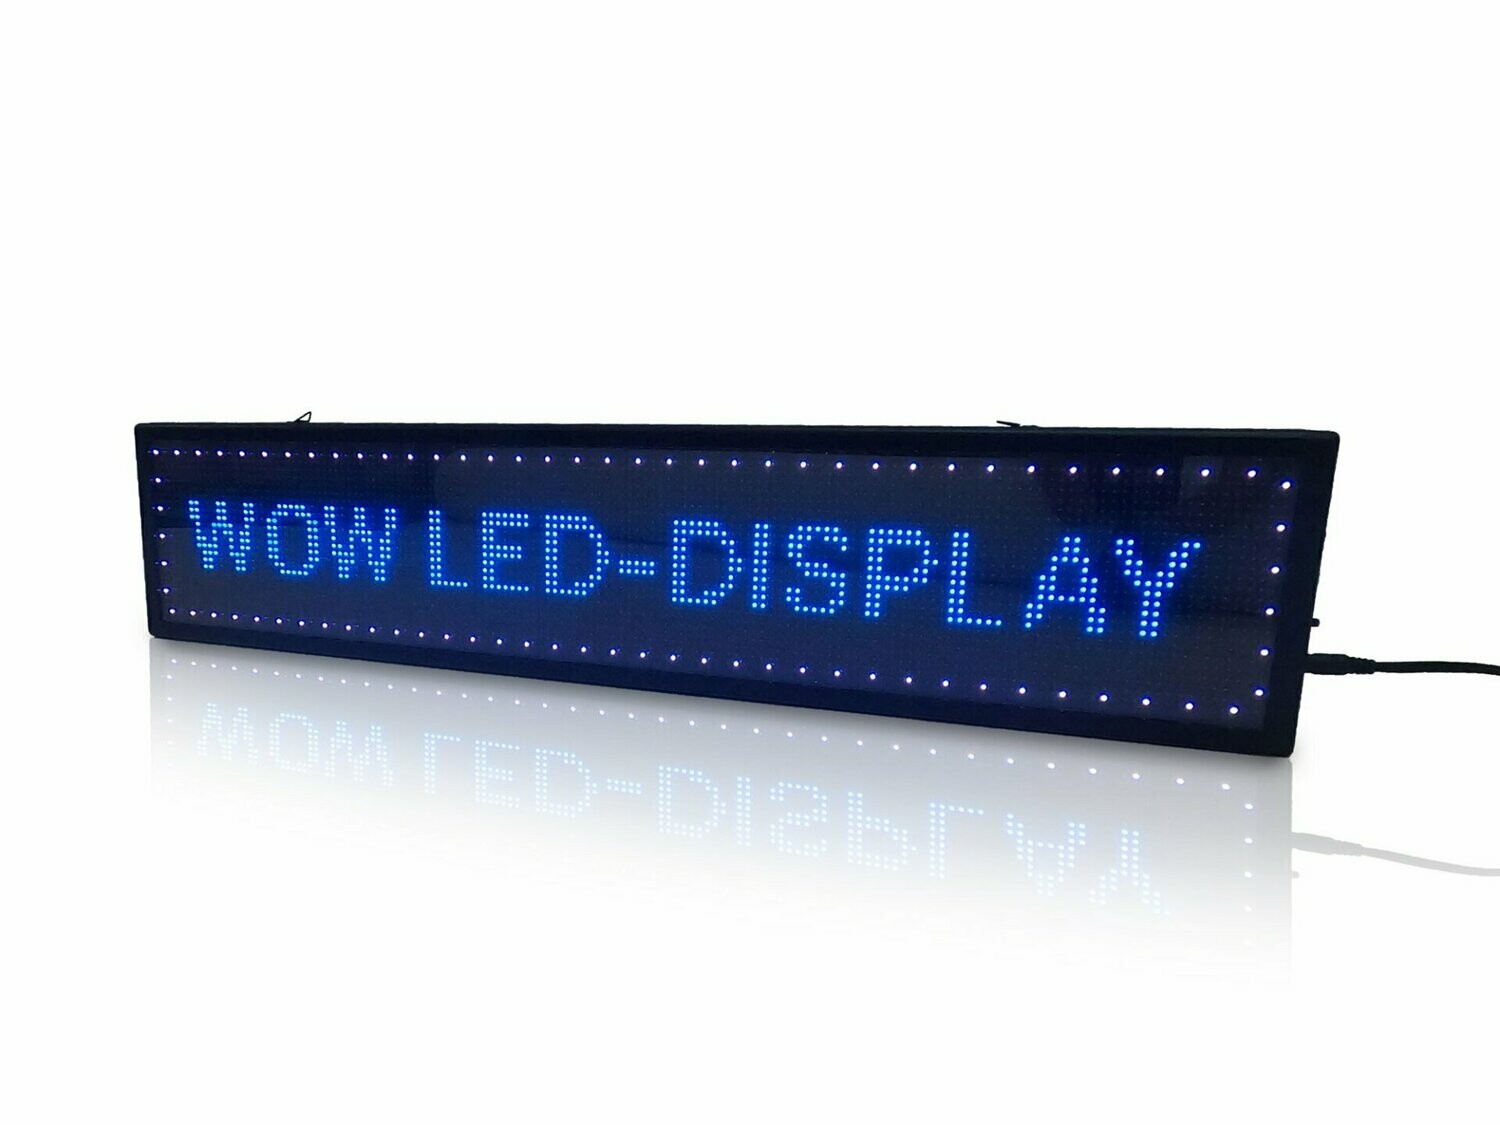 LED-Laufschriftsystem, inkl. App